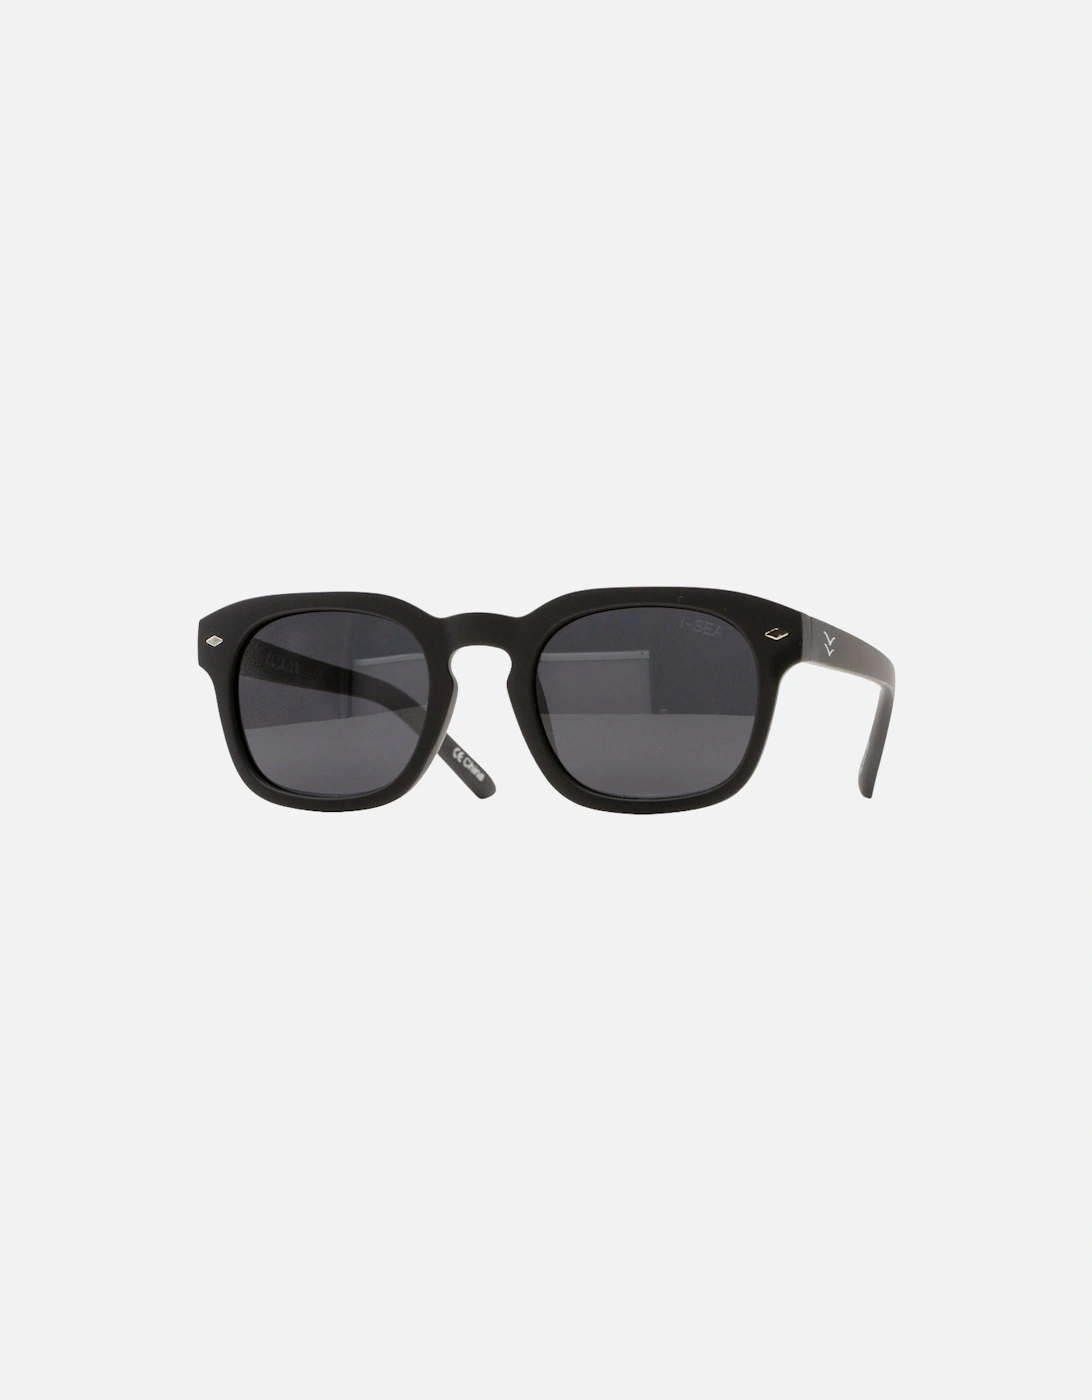 Blair 2.0 Sunglasses - Black/Smoke Polarized, 6 of 5